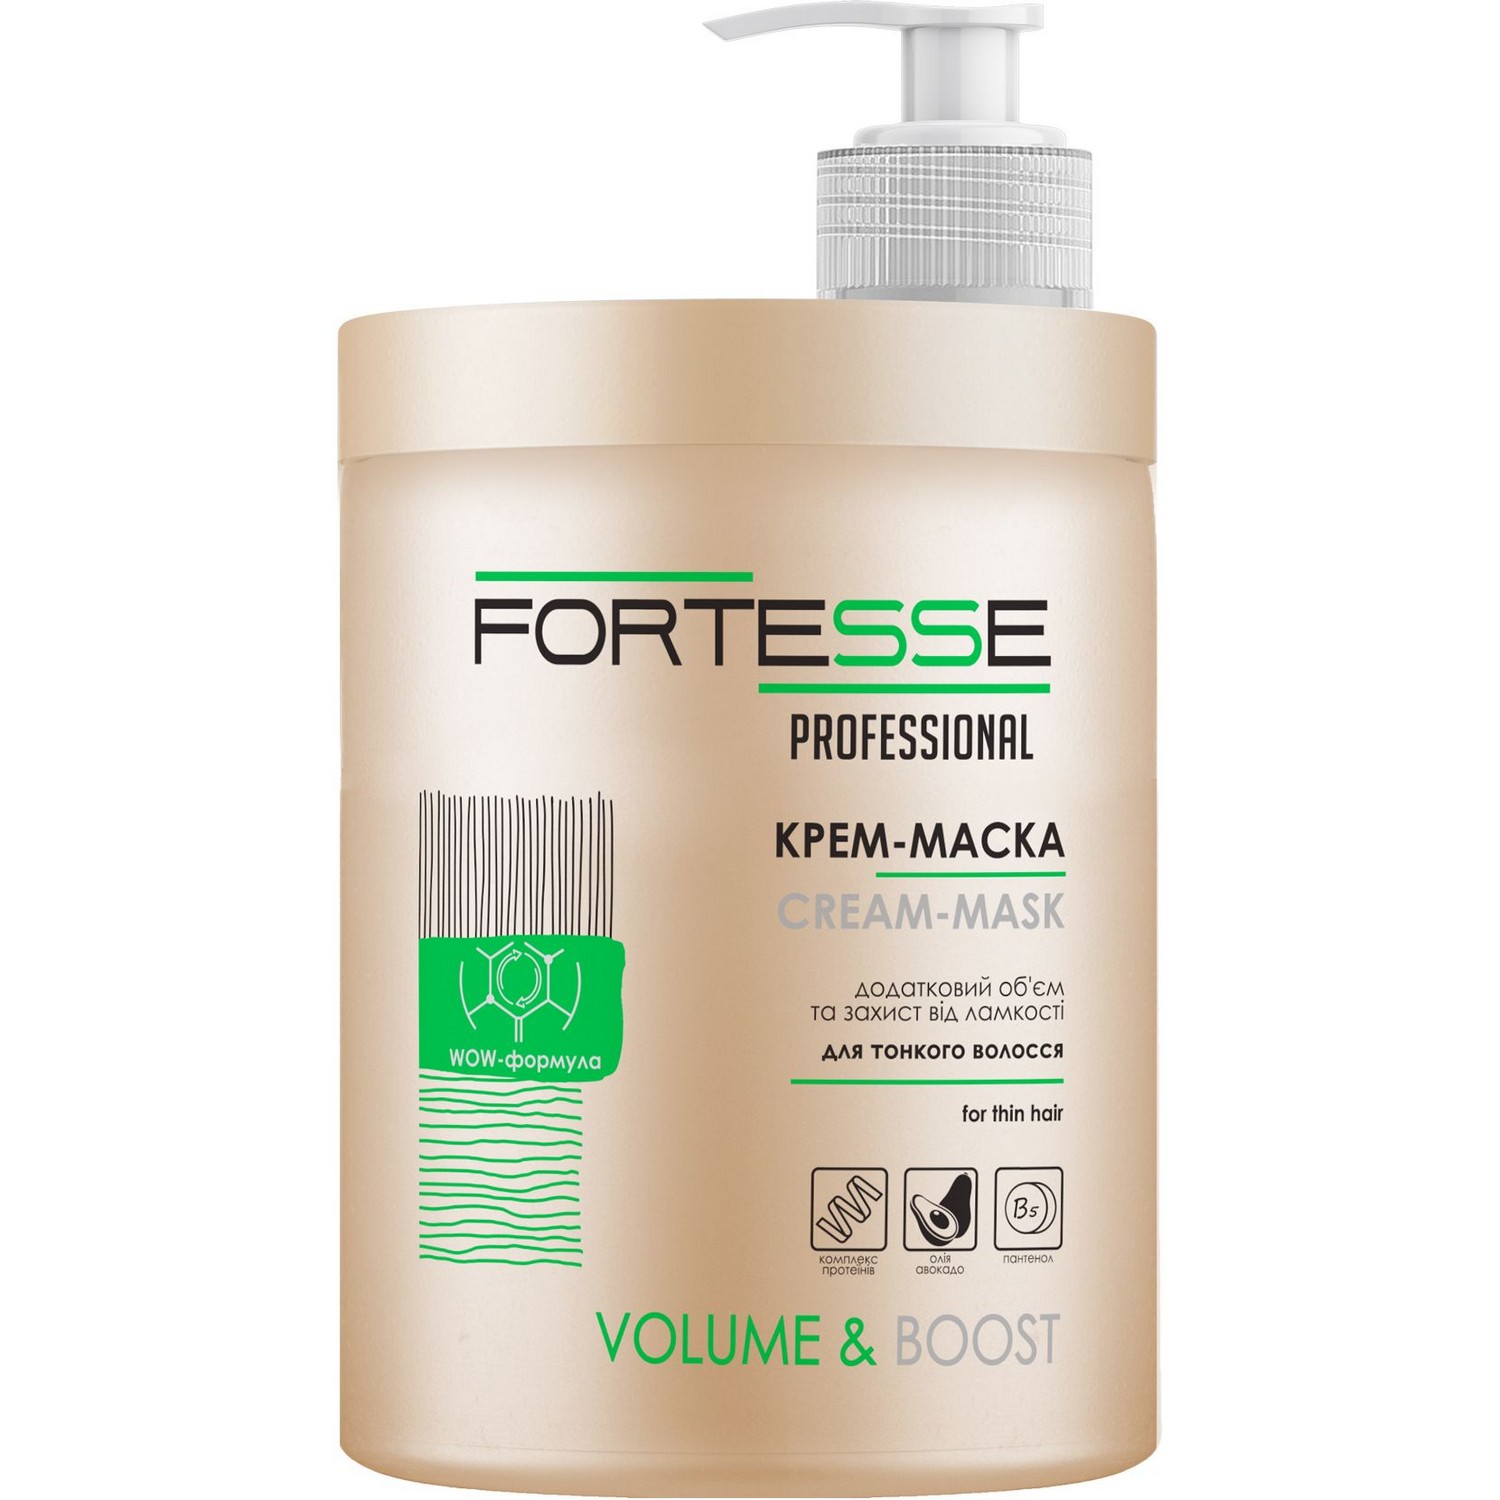 Маска-крем Fortesse Professional Volume & Boost Об'єм, для тонкого волосся, з дозатором, 1000 мл - фото 1